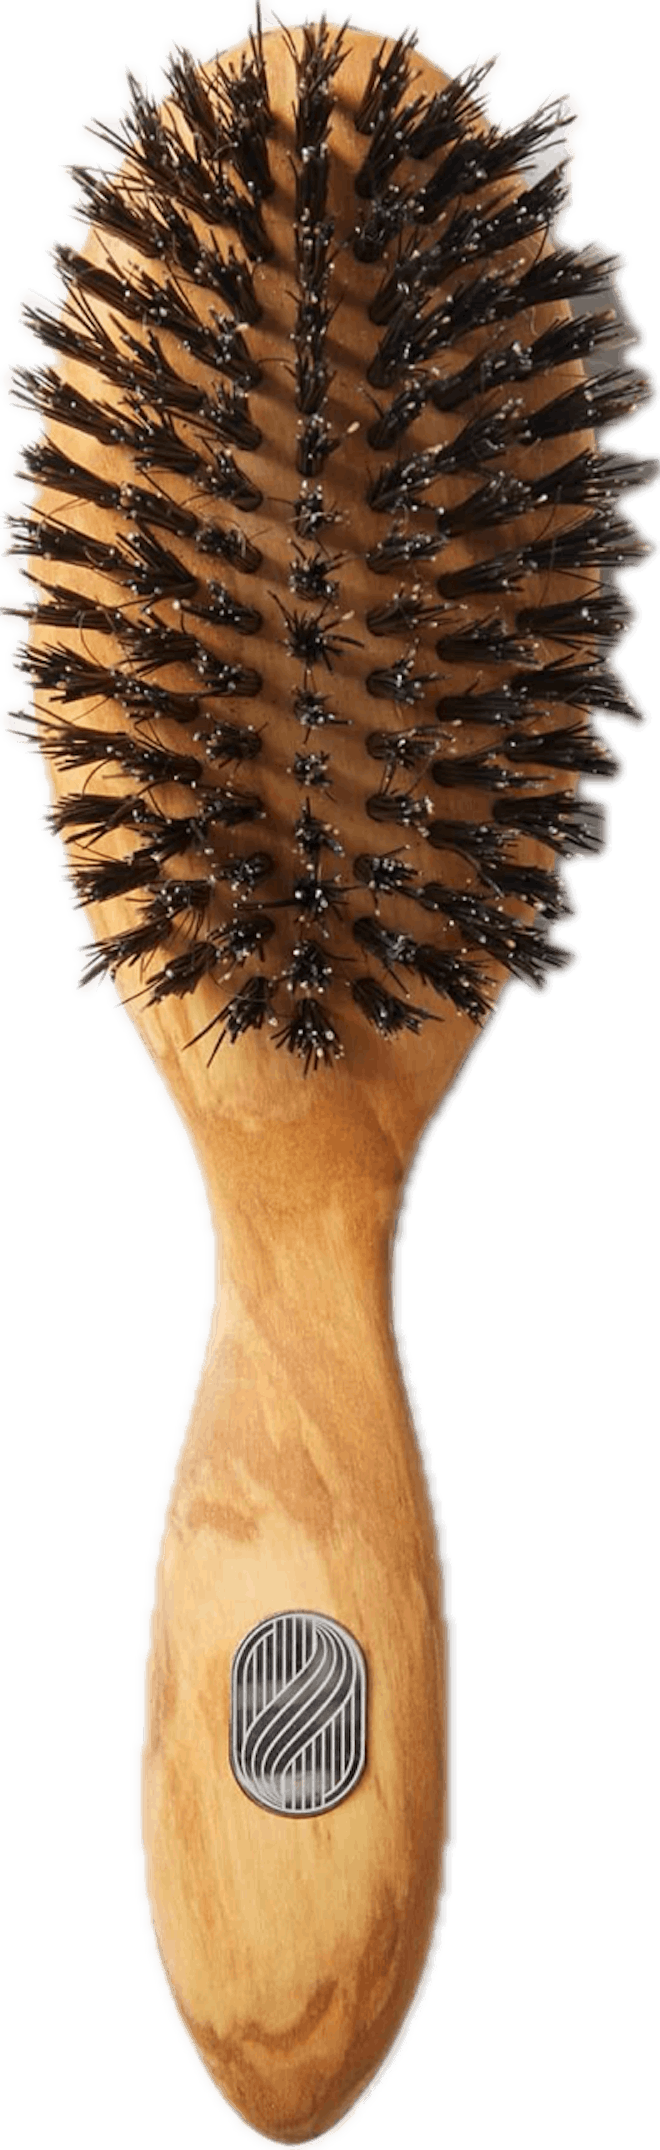 The 100% handmade Repair & Shine hairbrush